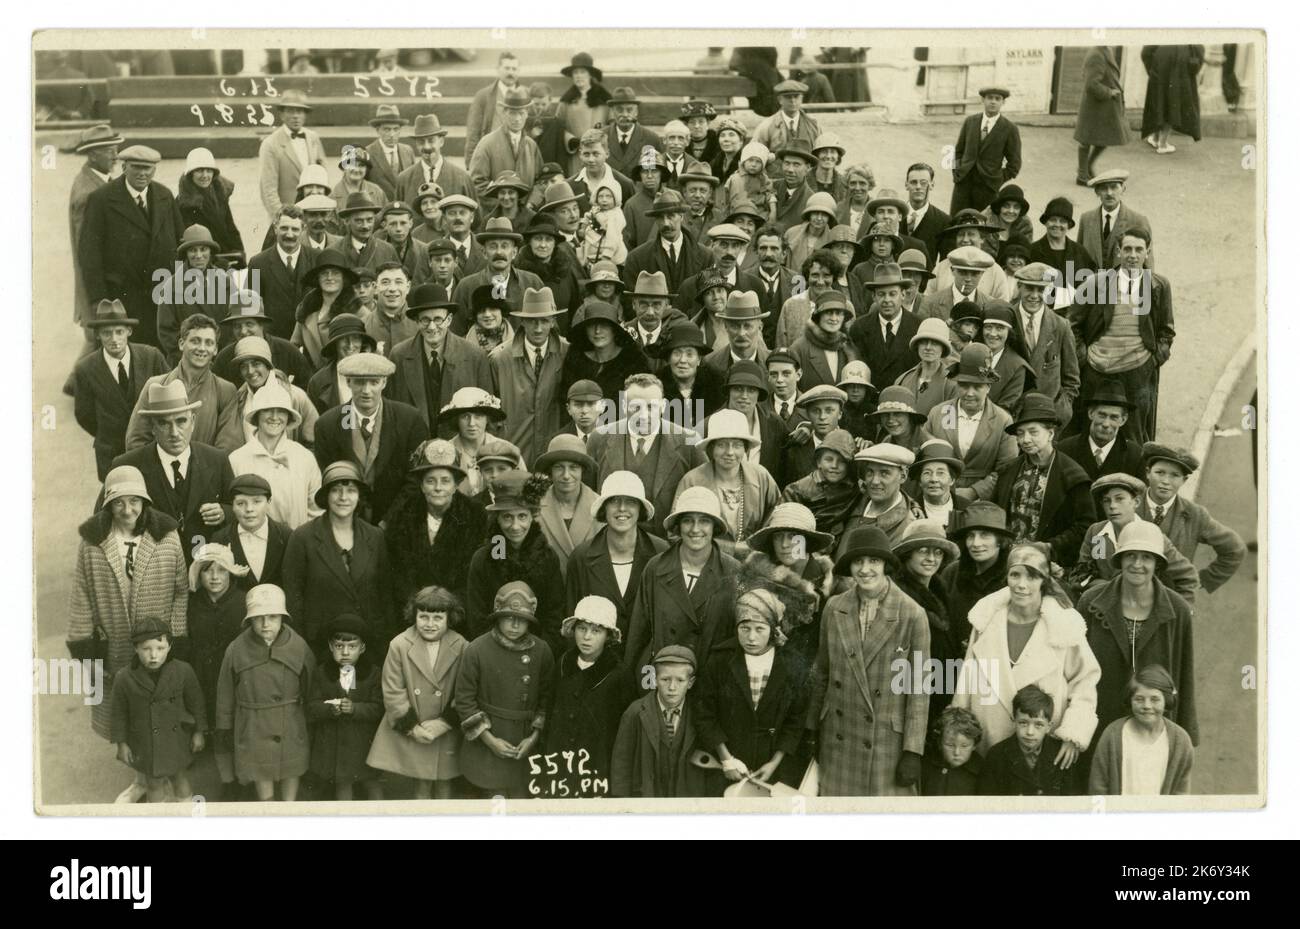 Originalpostkarte aus den 20er Jahren mit einer großen Menschenmenge am Meer, fotografiert vom Pier. Herausgegeben von B.B. Fotoserie vom 9. August 1925 6,16pm, auf der Vorderseite gedruckt. Einige Charaktere, jede Menge Mode, darunter Damenmützen und homburger Herrenhüte und flache Mützen. Bournemouth, England, Großbritannien. Stockfoto